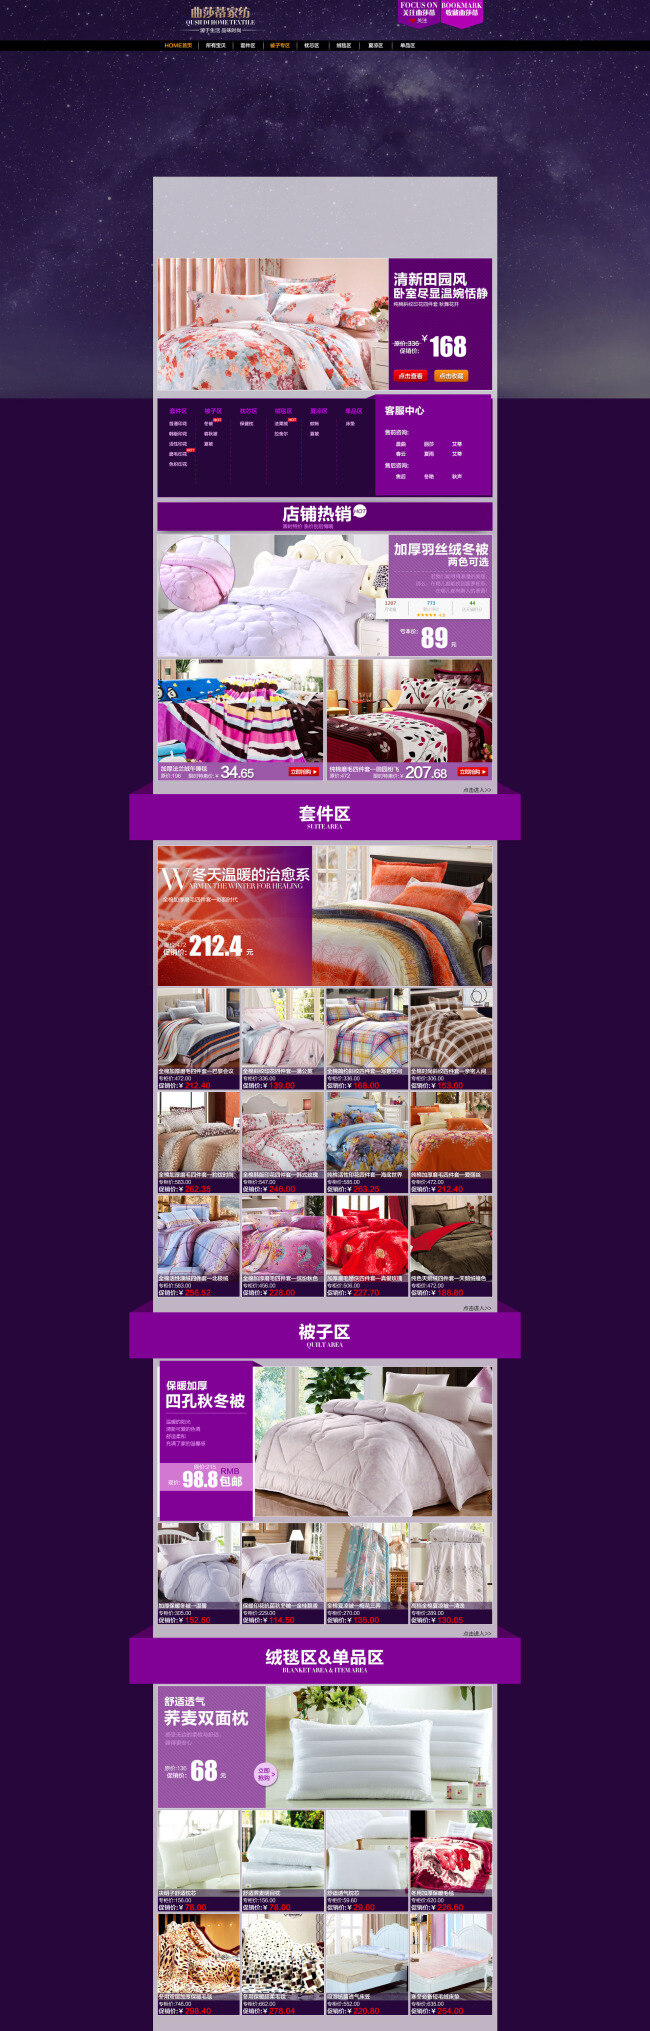 淘宝 品牌 家纺 床上用品 促销 海报 店铺活动海报 天猫海报 紫色